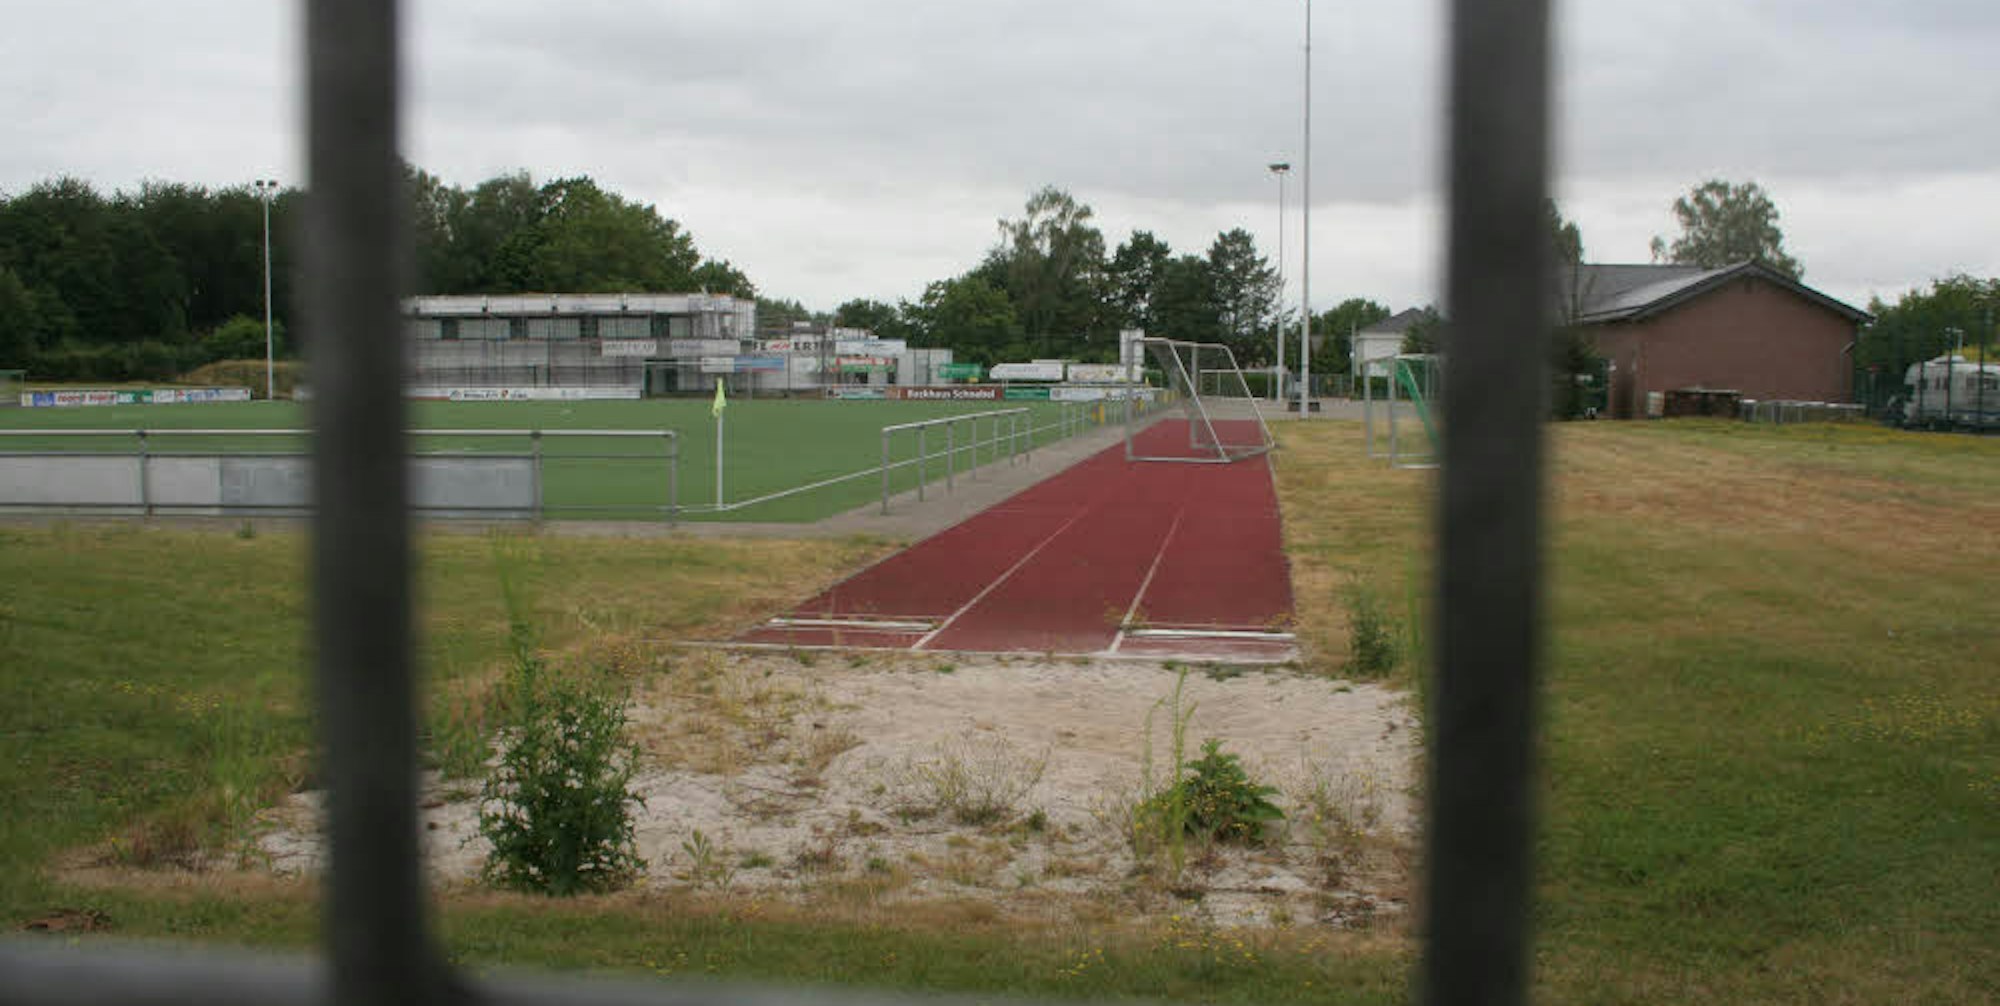 Sprunggrube und Laufbahn könnten wegfallen, sollte der Sportplatz wie geplant erweitert werden. Die Schule wehrt sich.